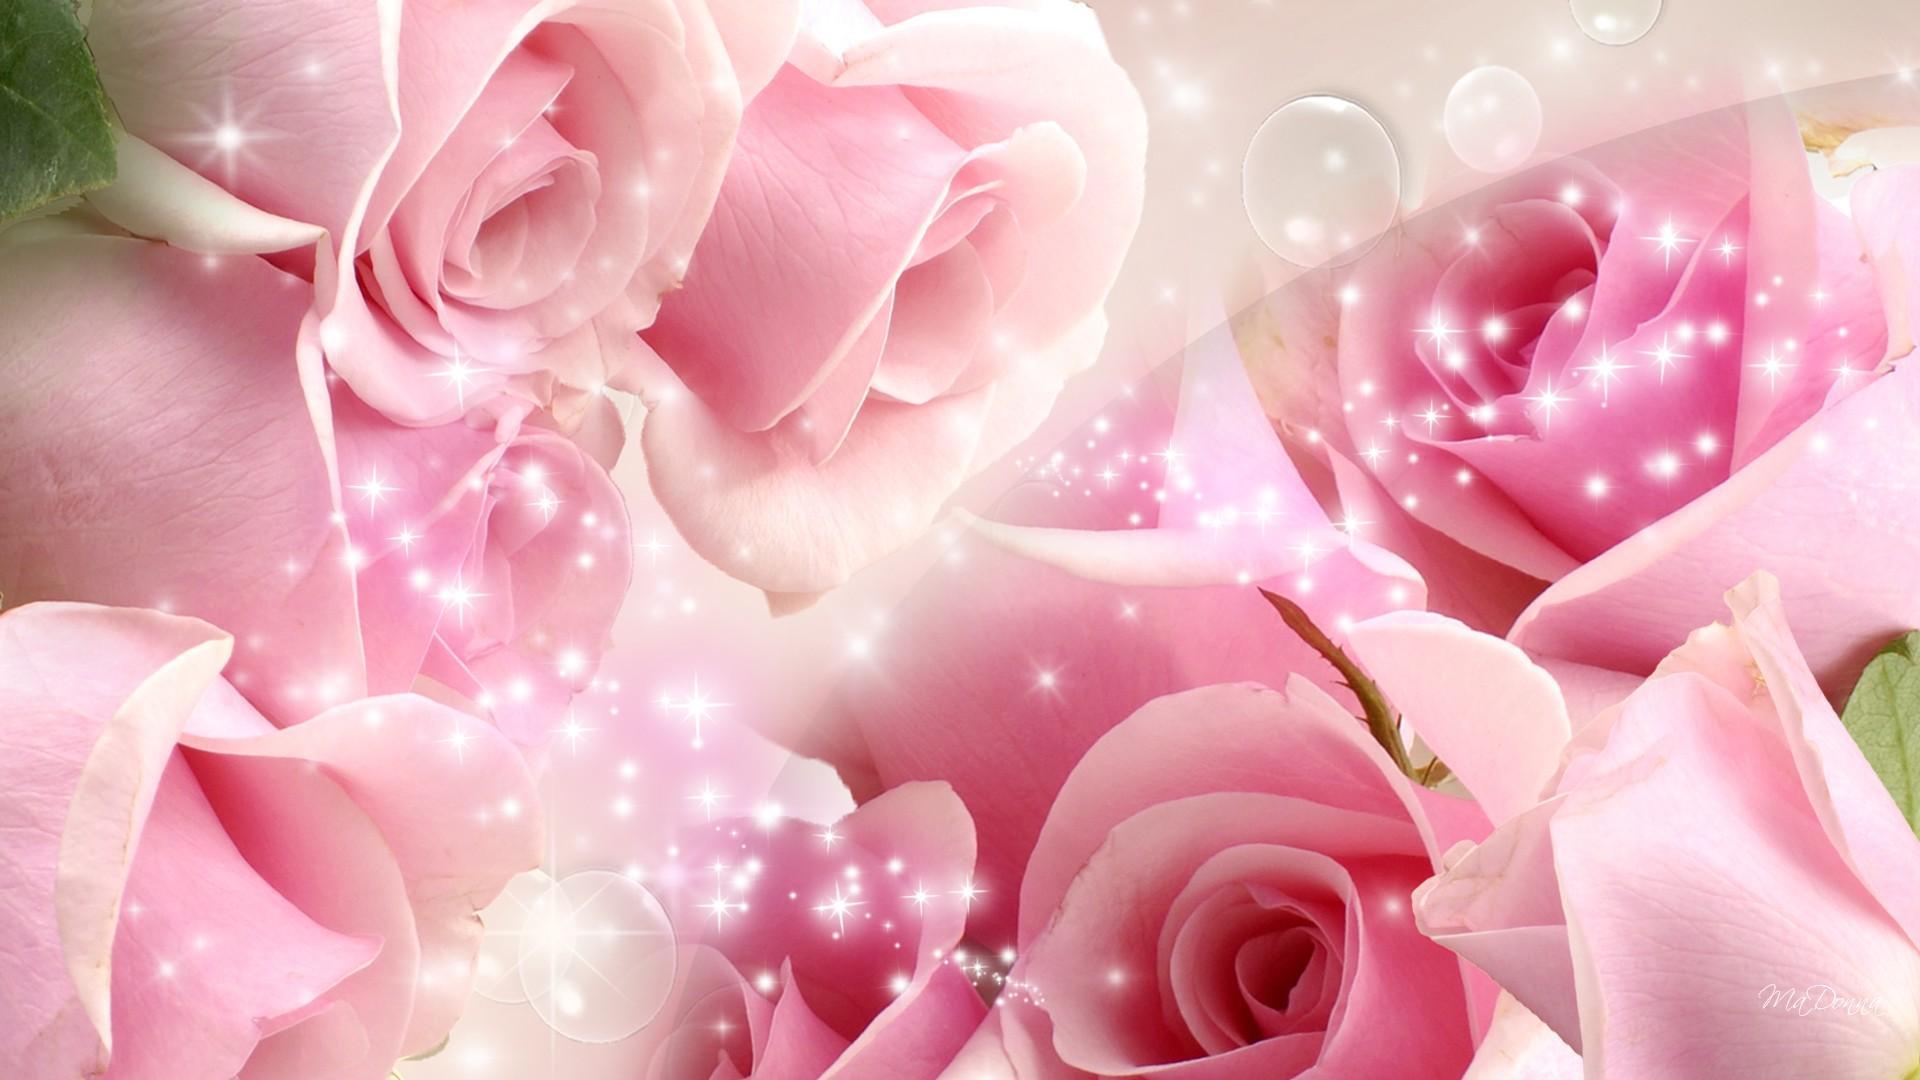 Beautiful Pink Roses Wallpapers For Desktop - Wallpaper Cave